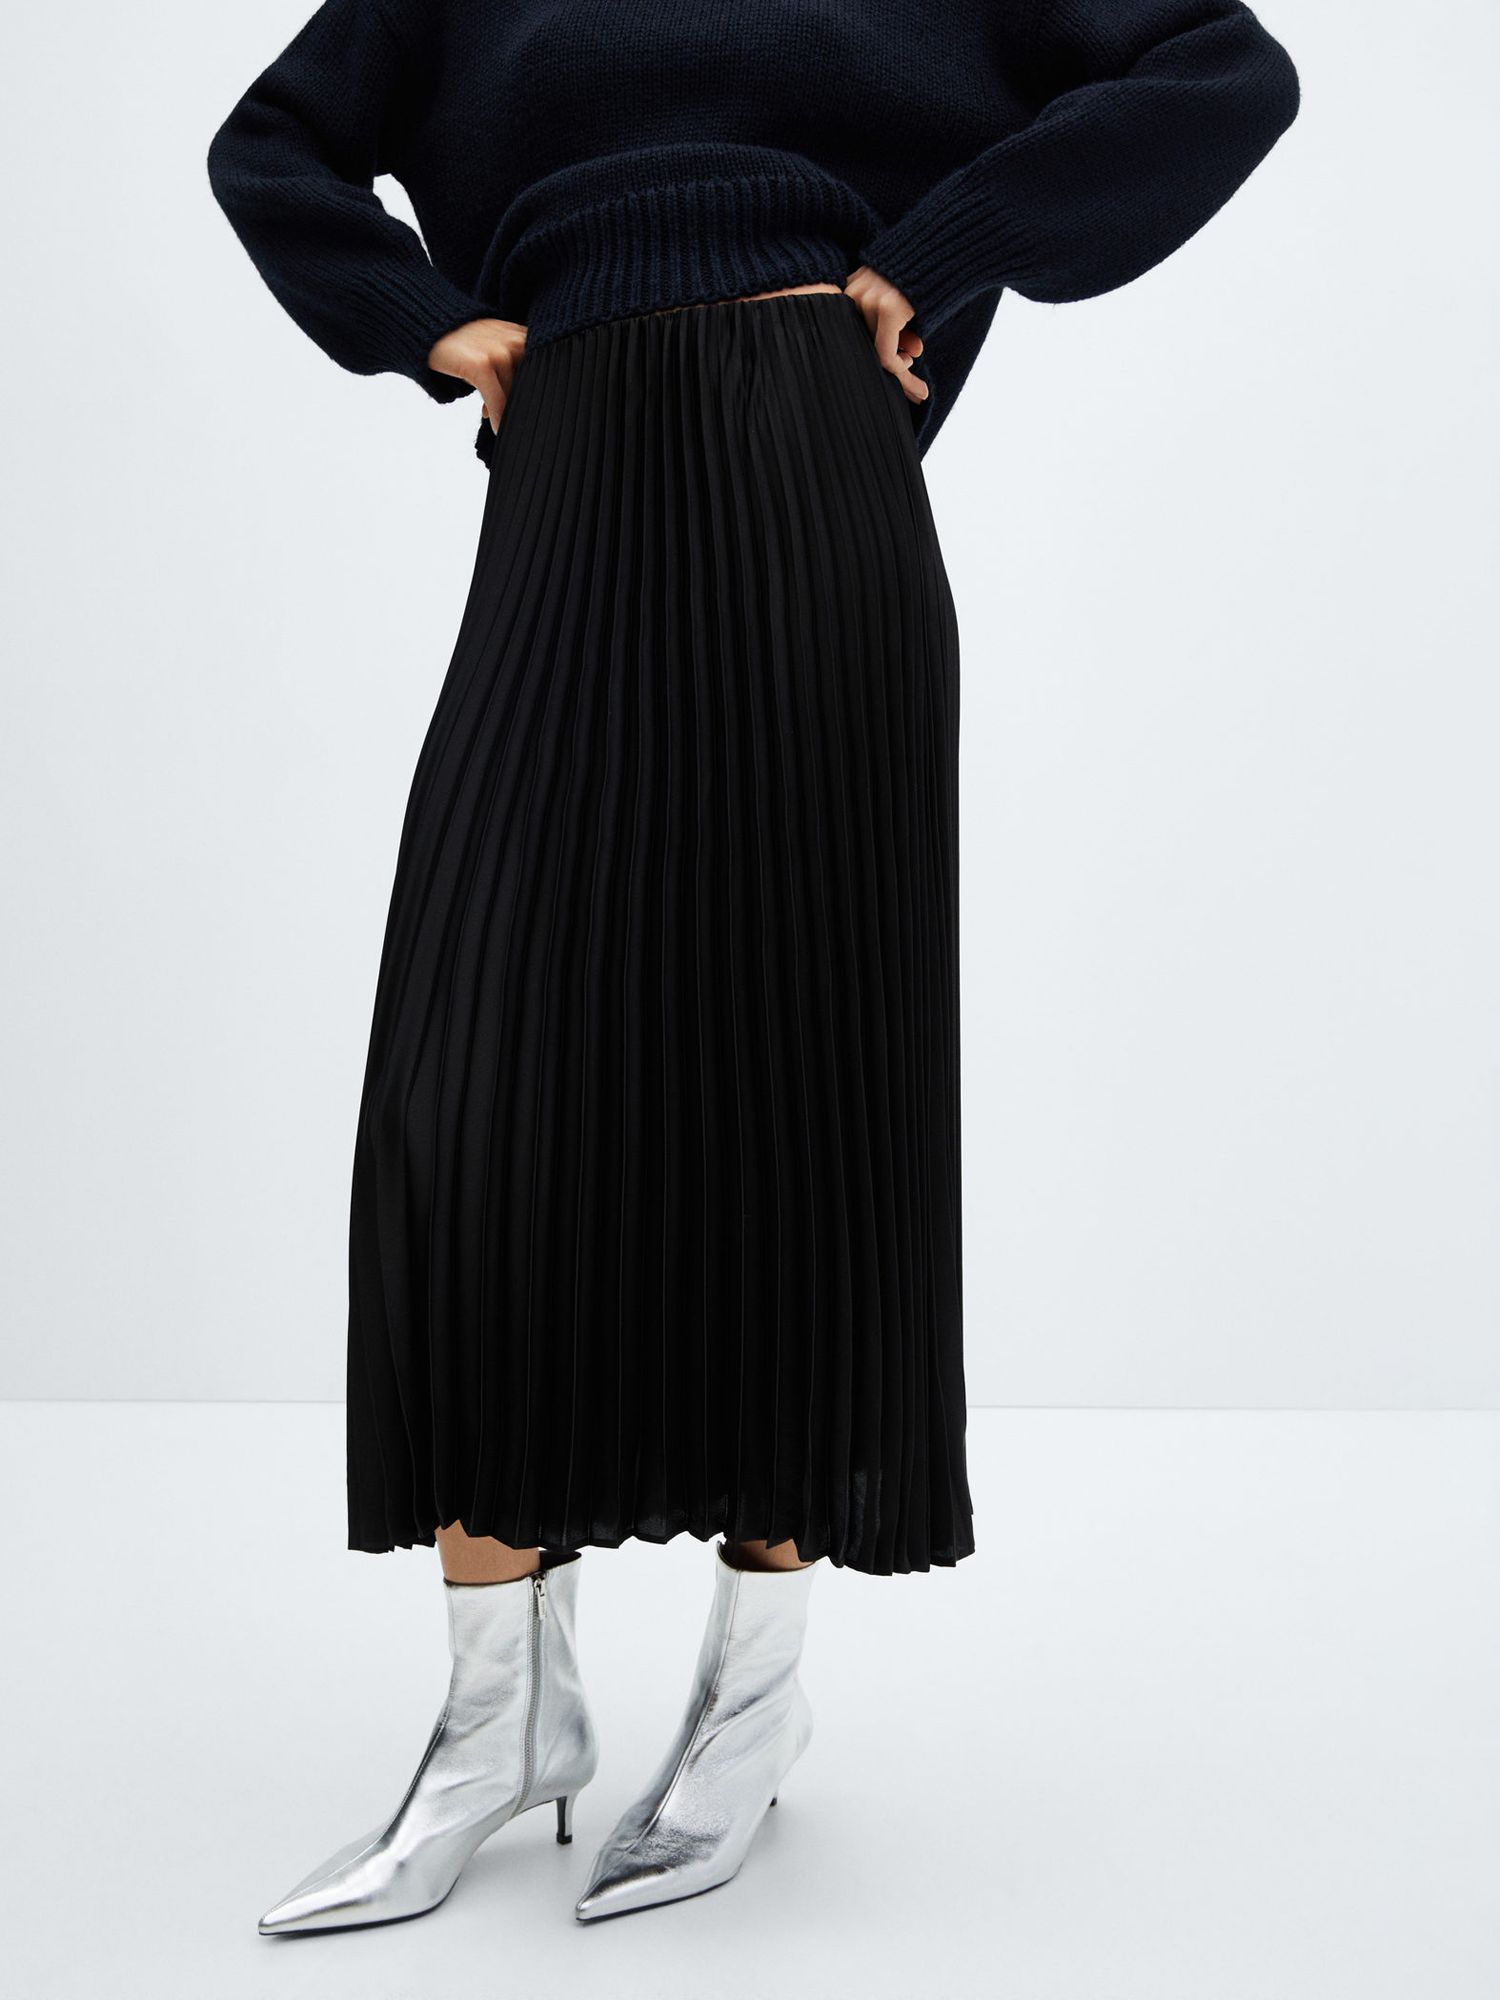 Mango Plisado Pleated Midi Satin Skirt, Black at John Lewis & Partners